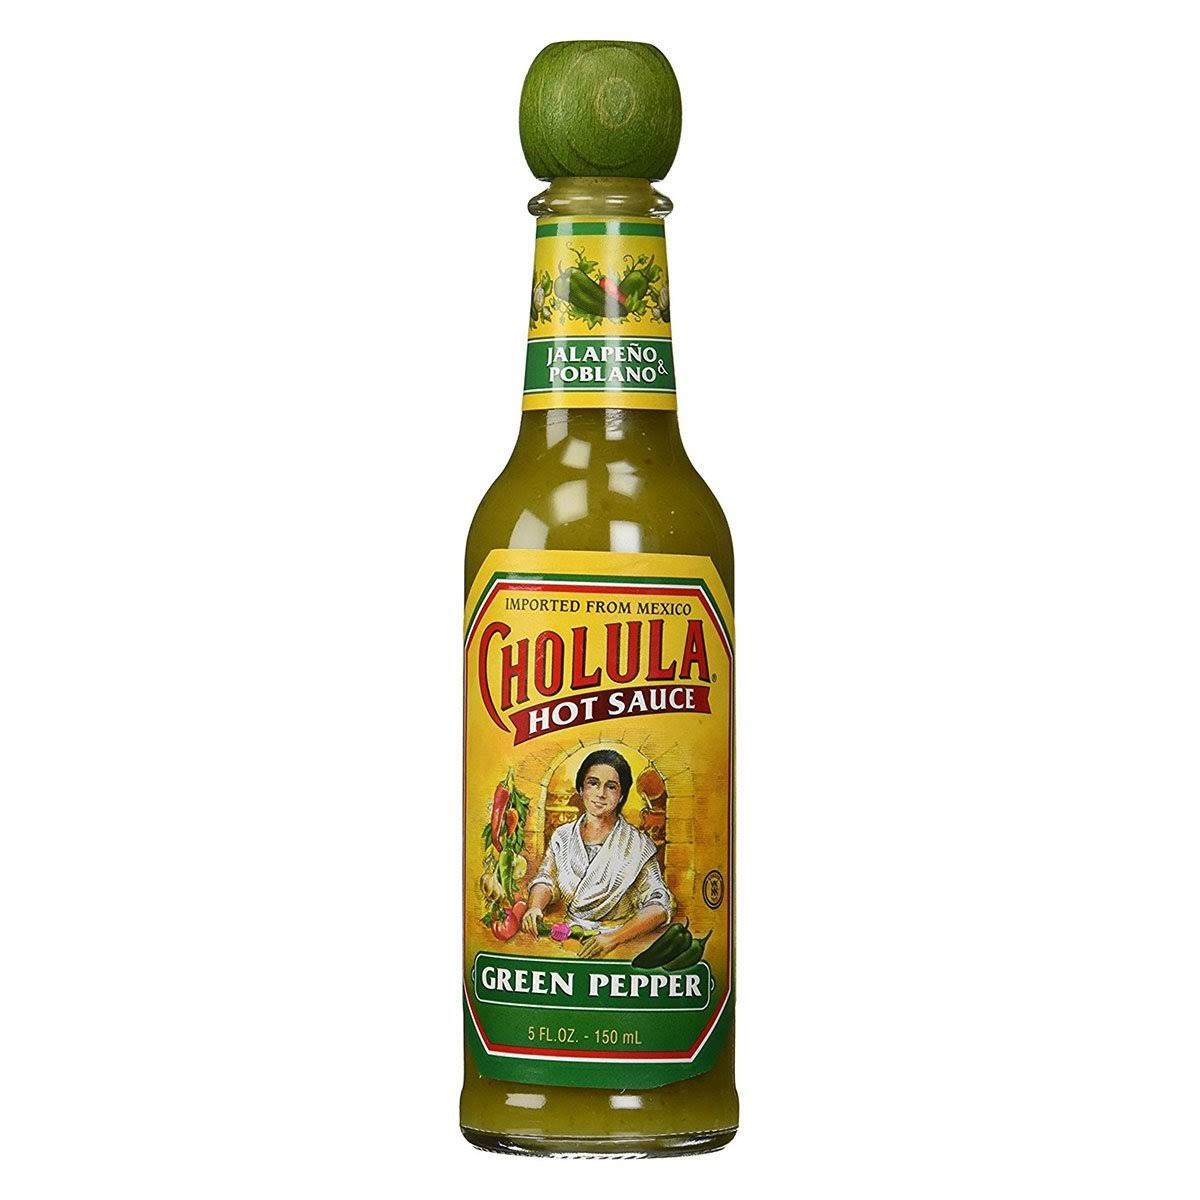 Cholula Hot Sauce - 150ml, Green Pepper